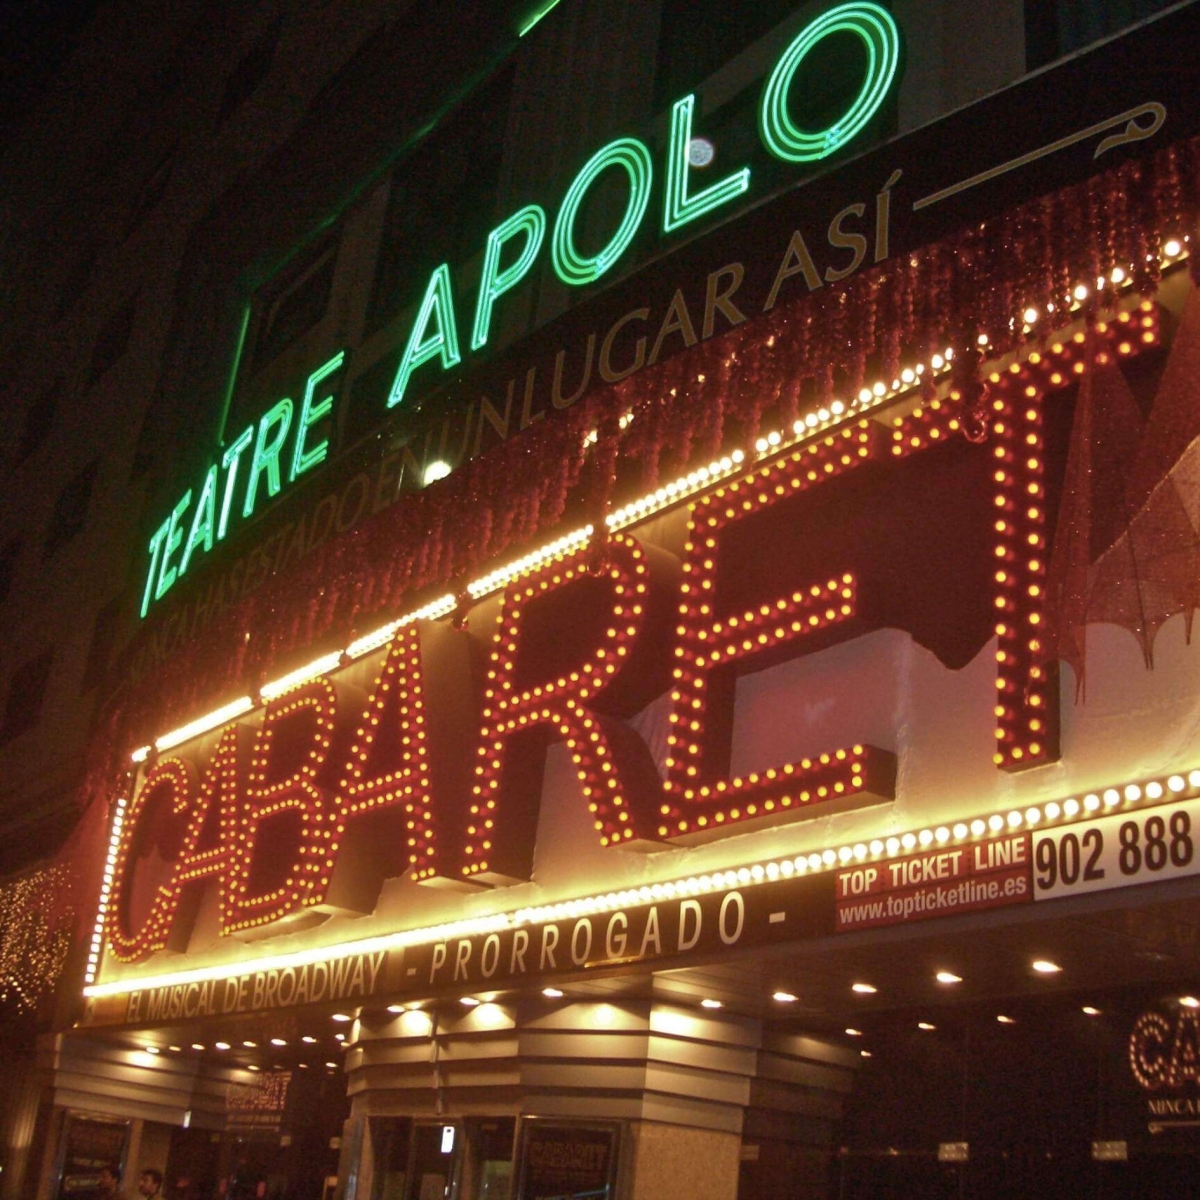 Apolo Theatre